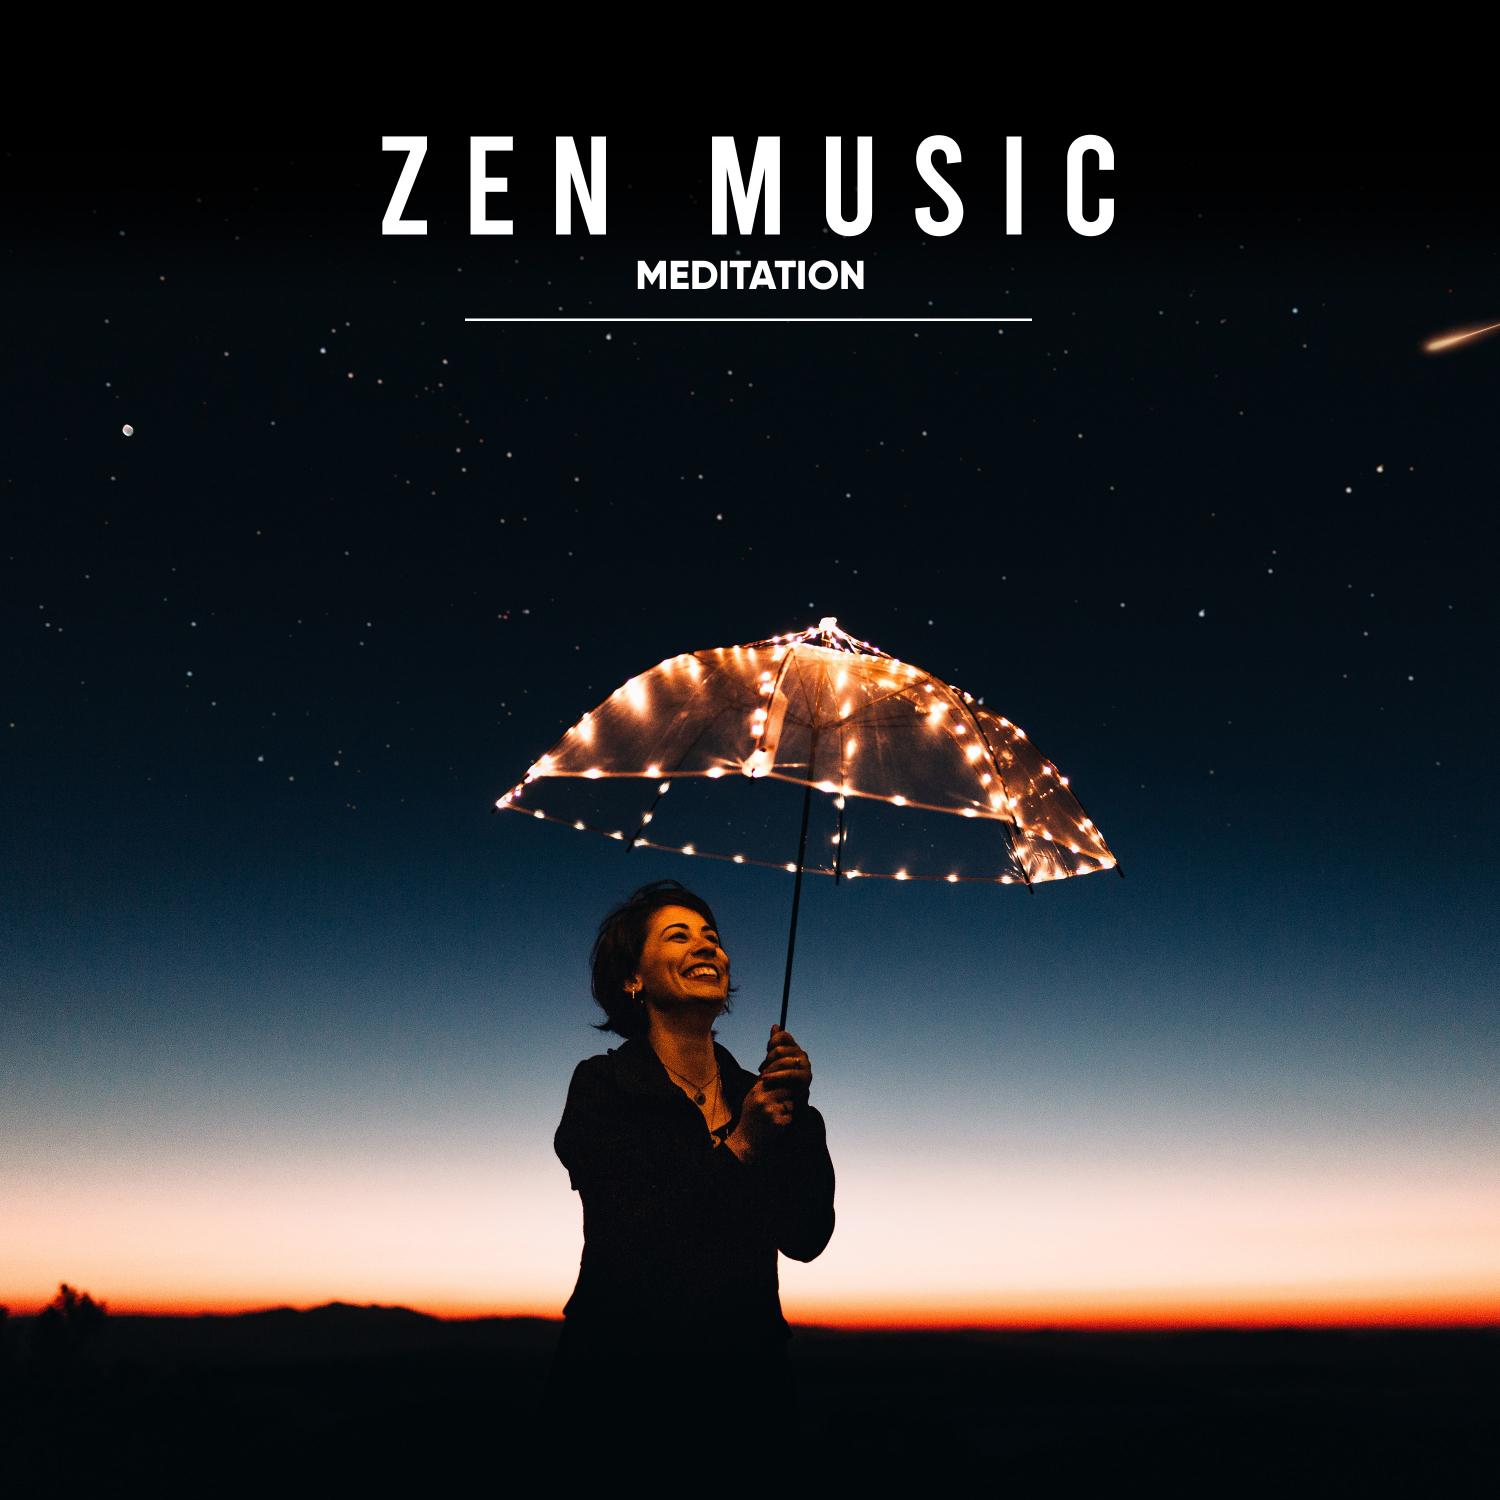 12 Zen Music Meditation Sounds